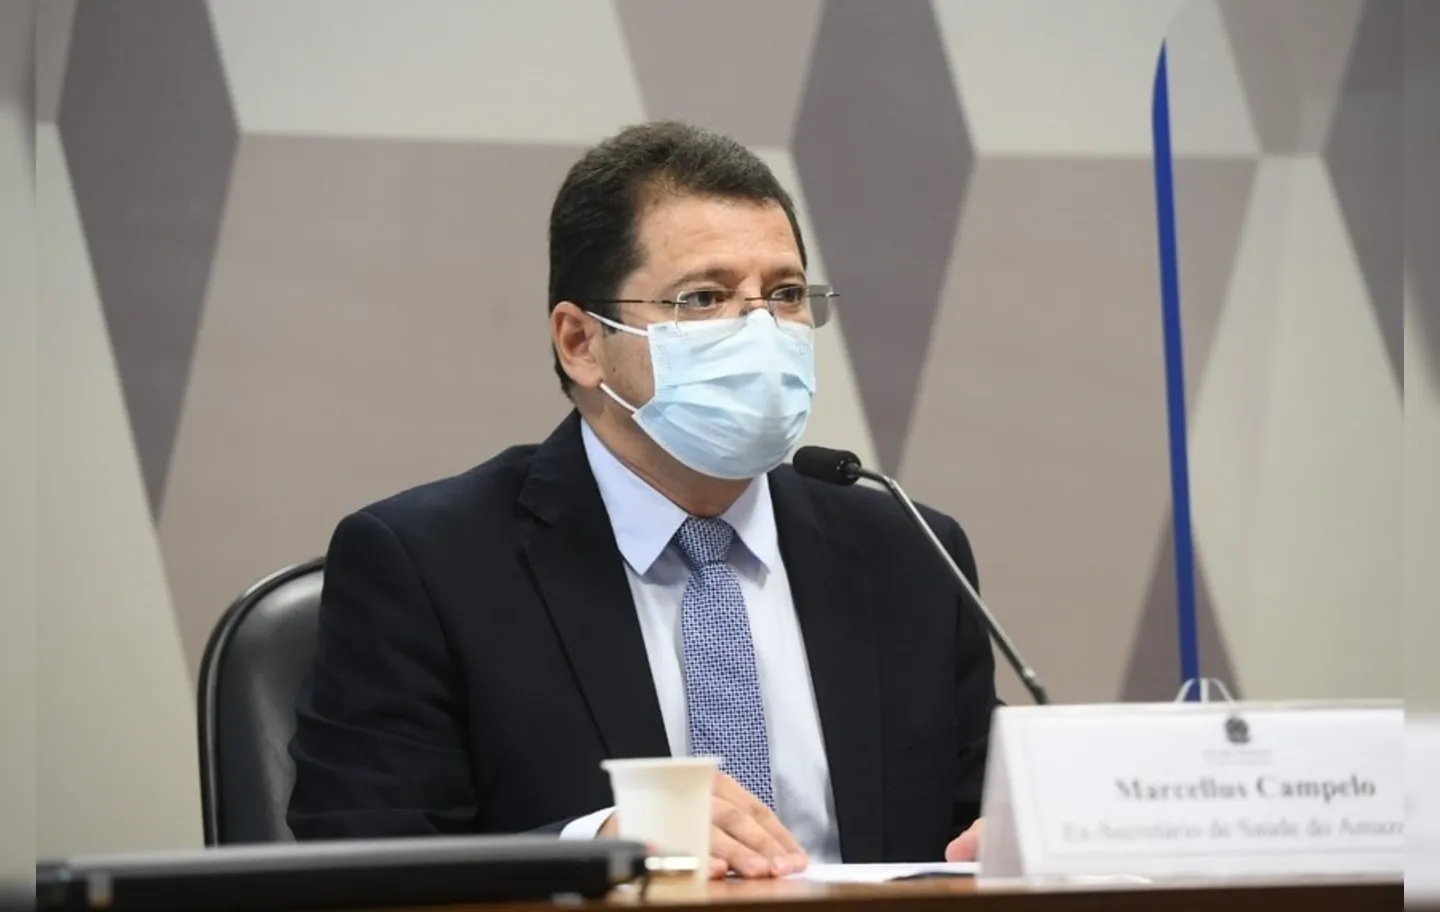 Segundo o ex-secretário, o Ministério da Saúde deu ênfase ao tratamento precoce na crise do estado | Foto: Ag. Senado